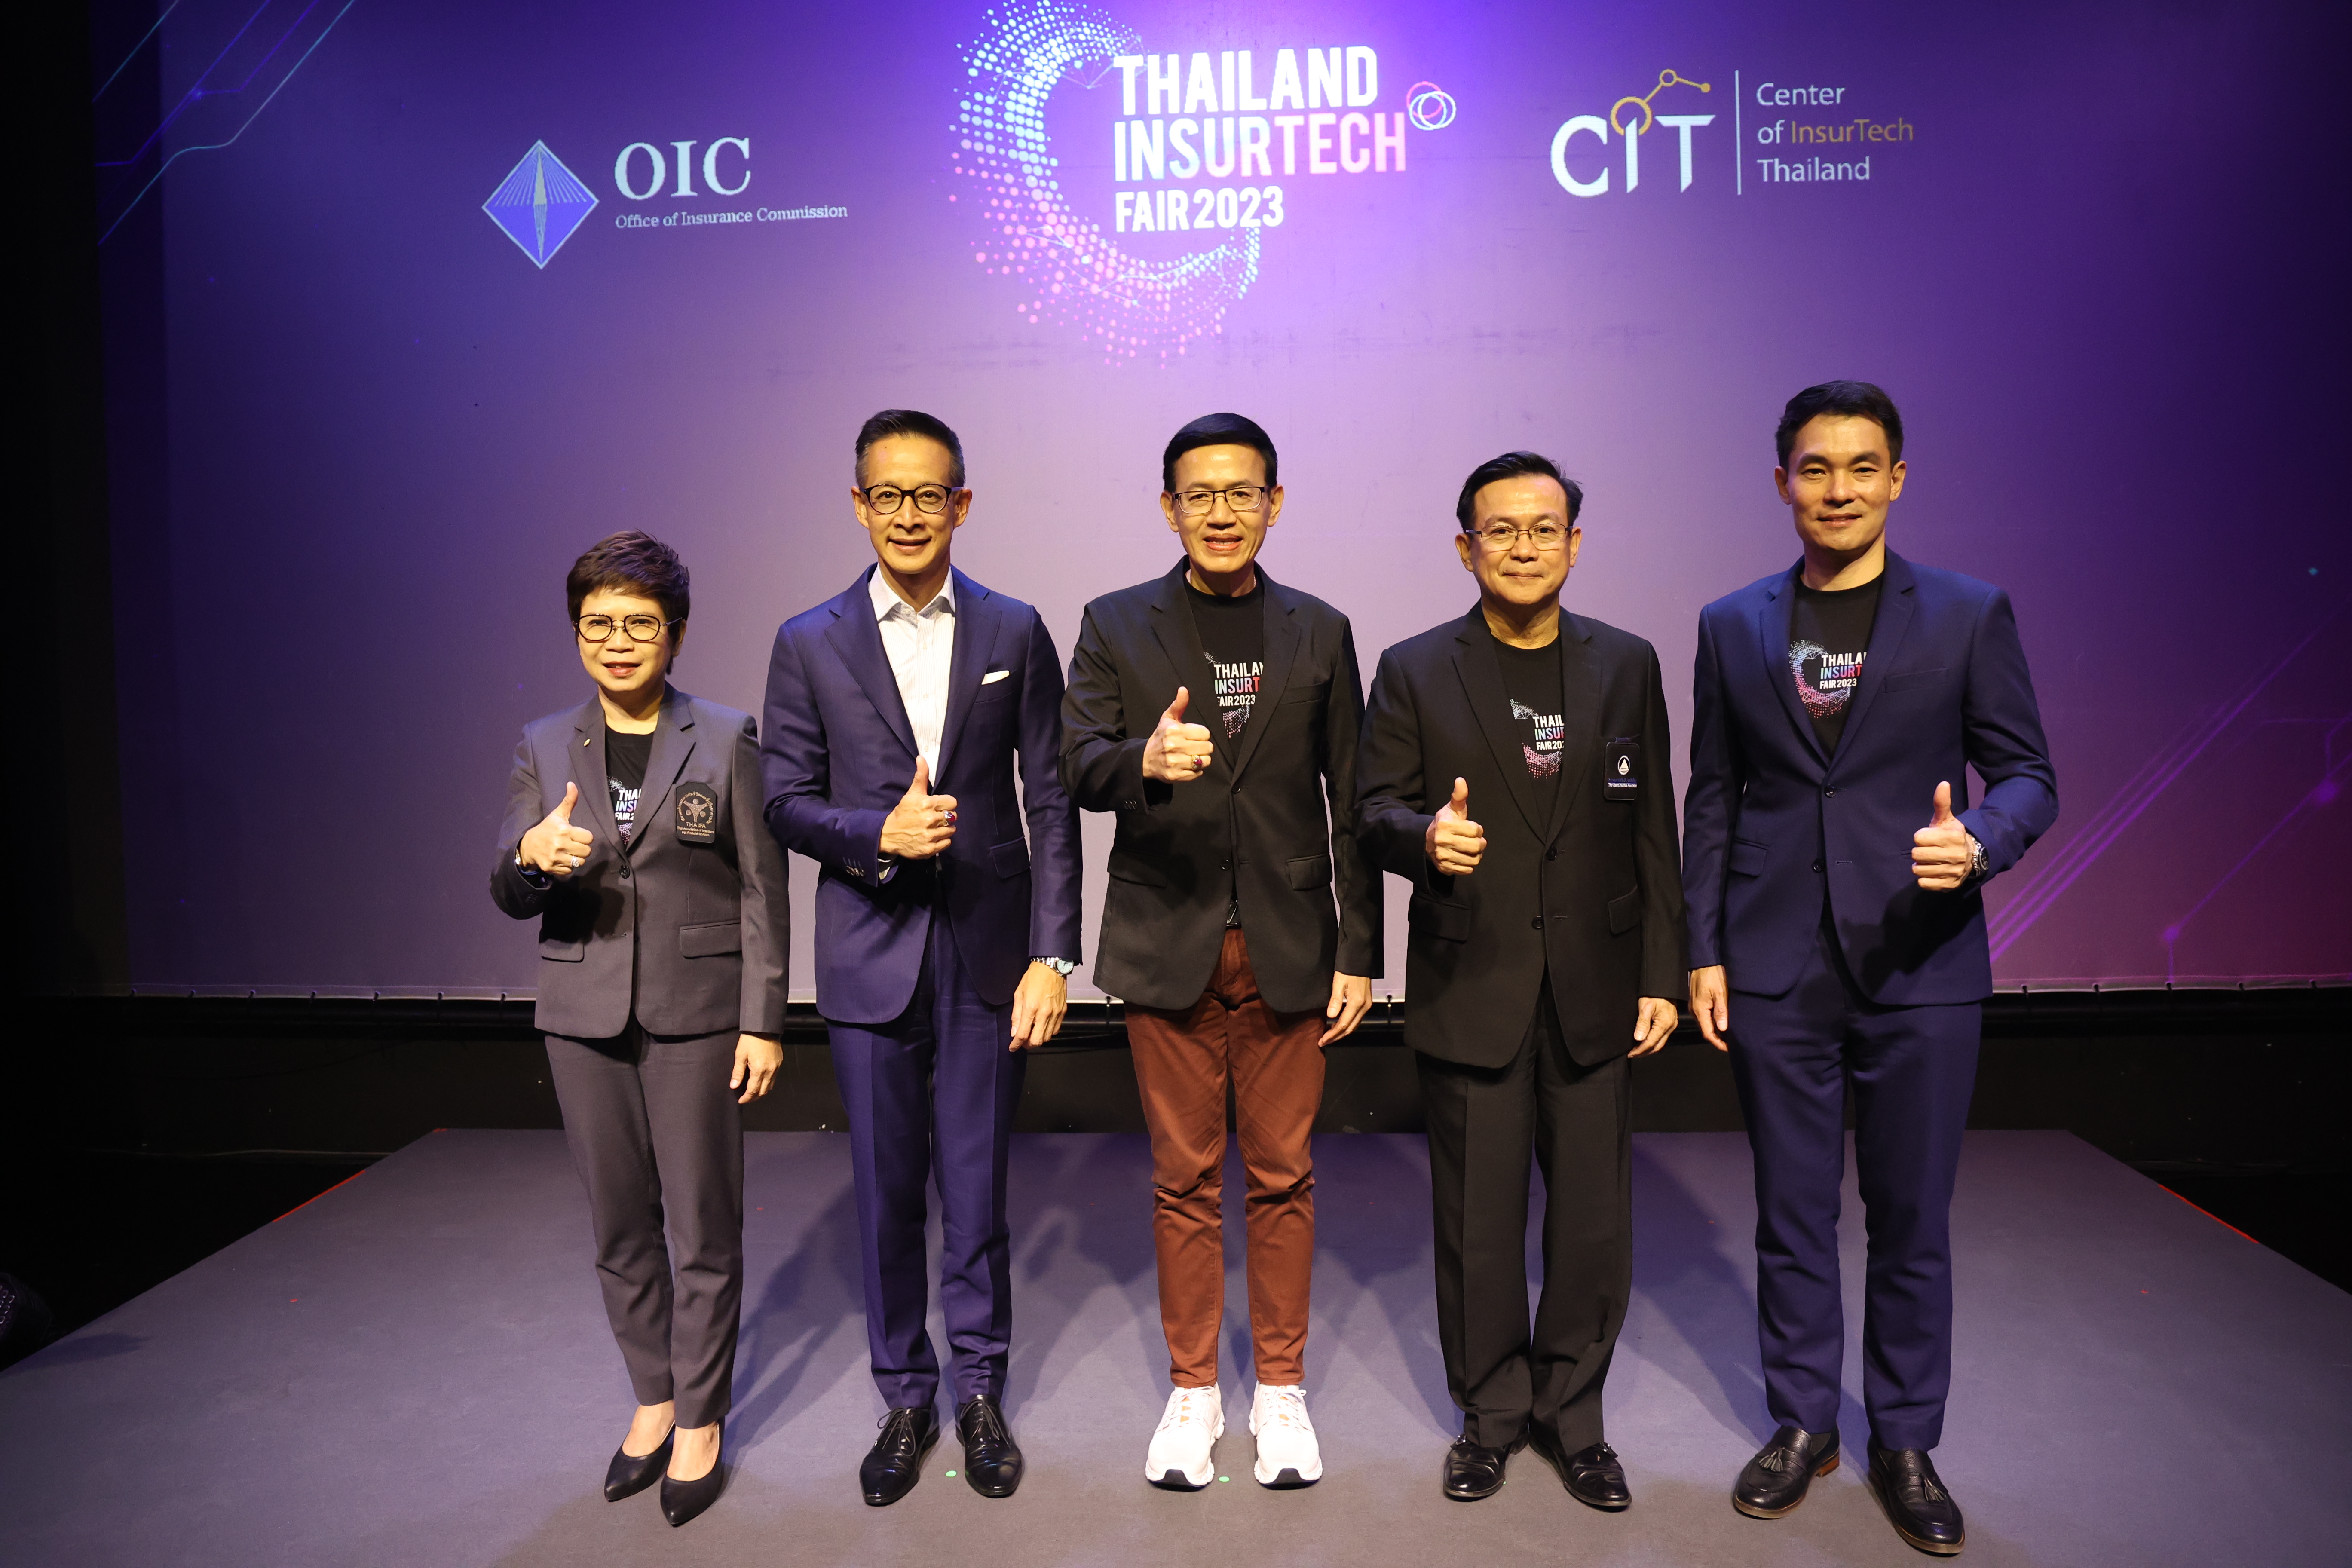 สมาคมประกันชีวิตไทย ร่วมแถลงข่าวการจัดงาน Thailand InsurTech Fair 2023